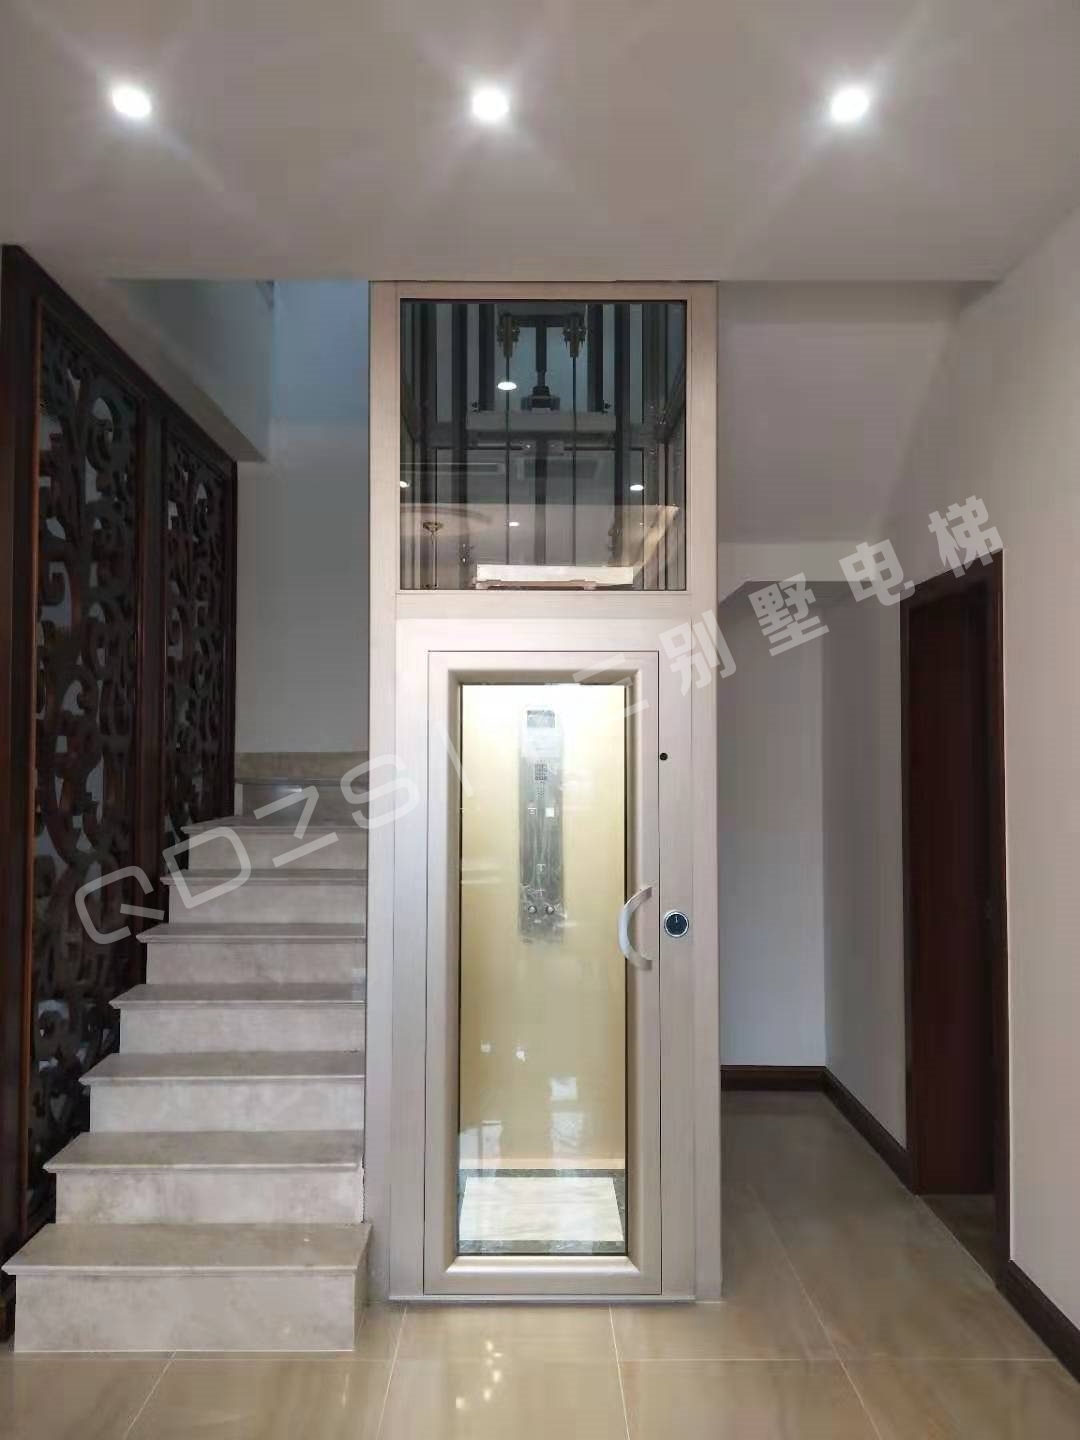 家用两层楼螺杆电梯 青岛中三Ⅲ型260公斤无底坑小尺寸轻量化家用螺杆电梯 解决您的楼板承重问题